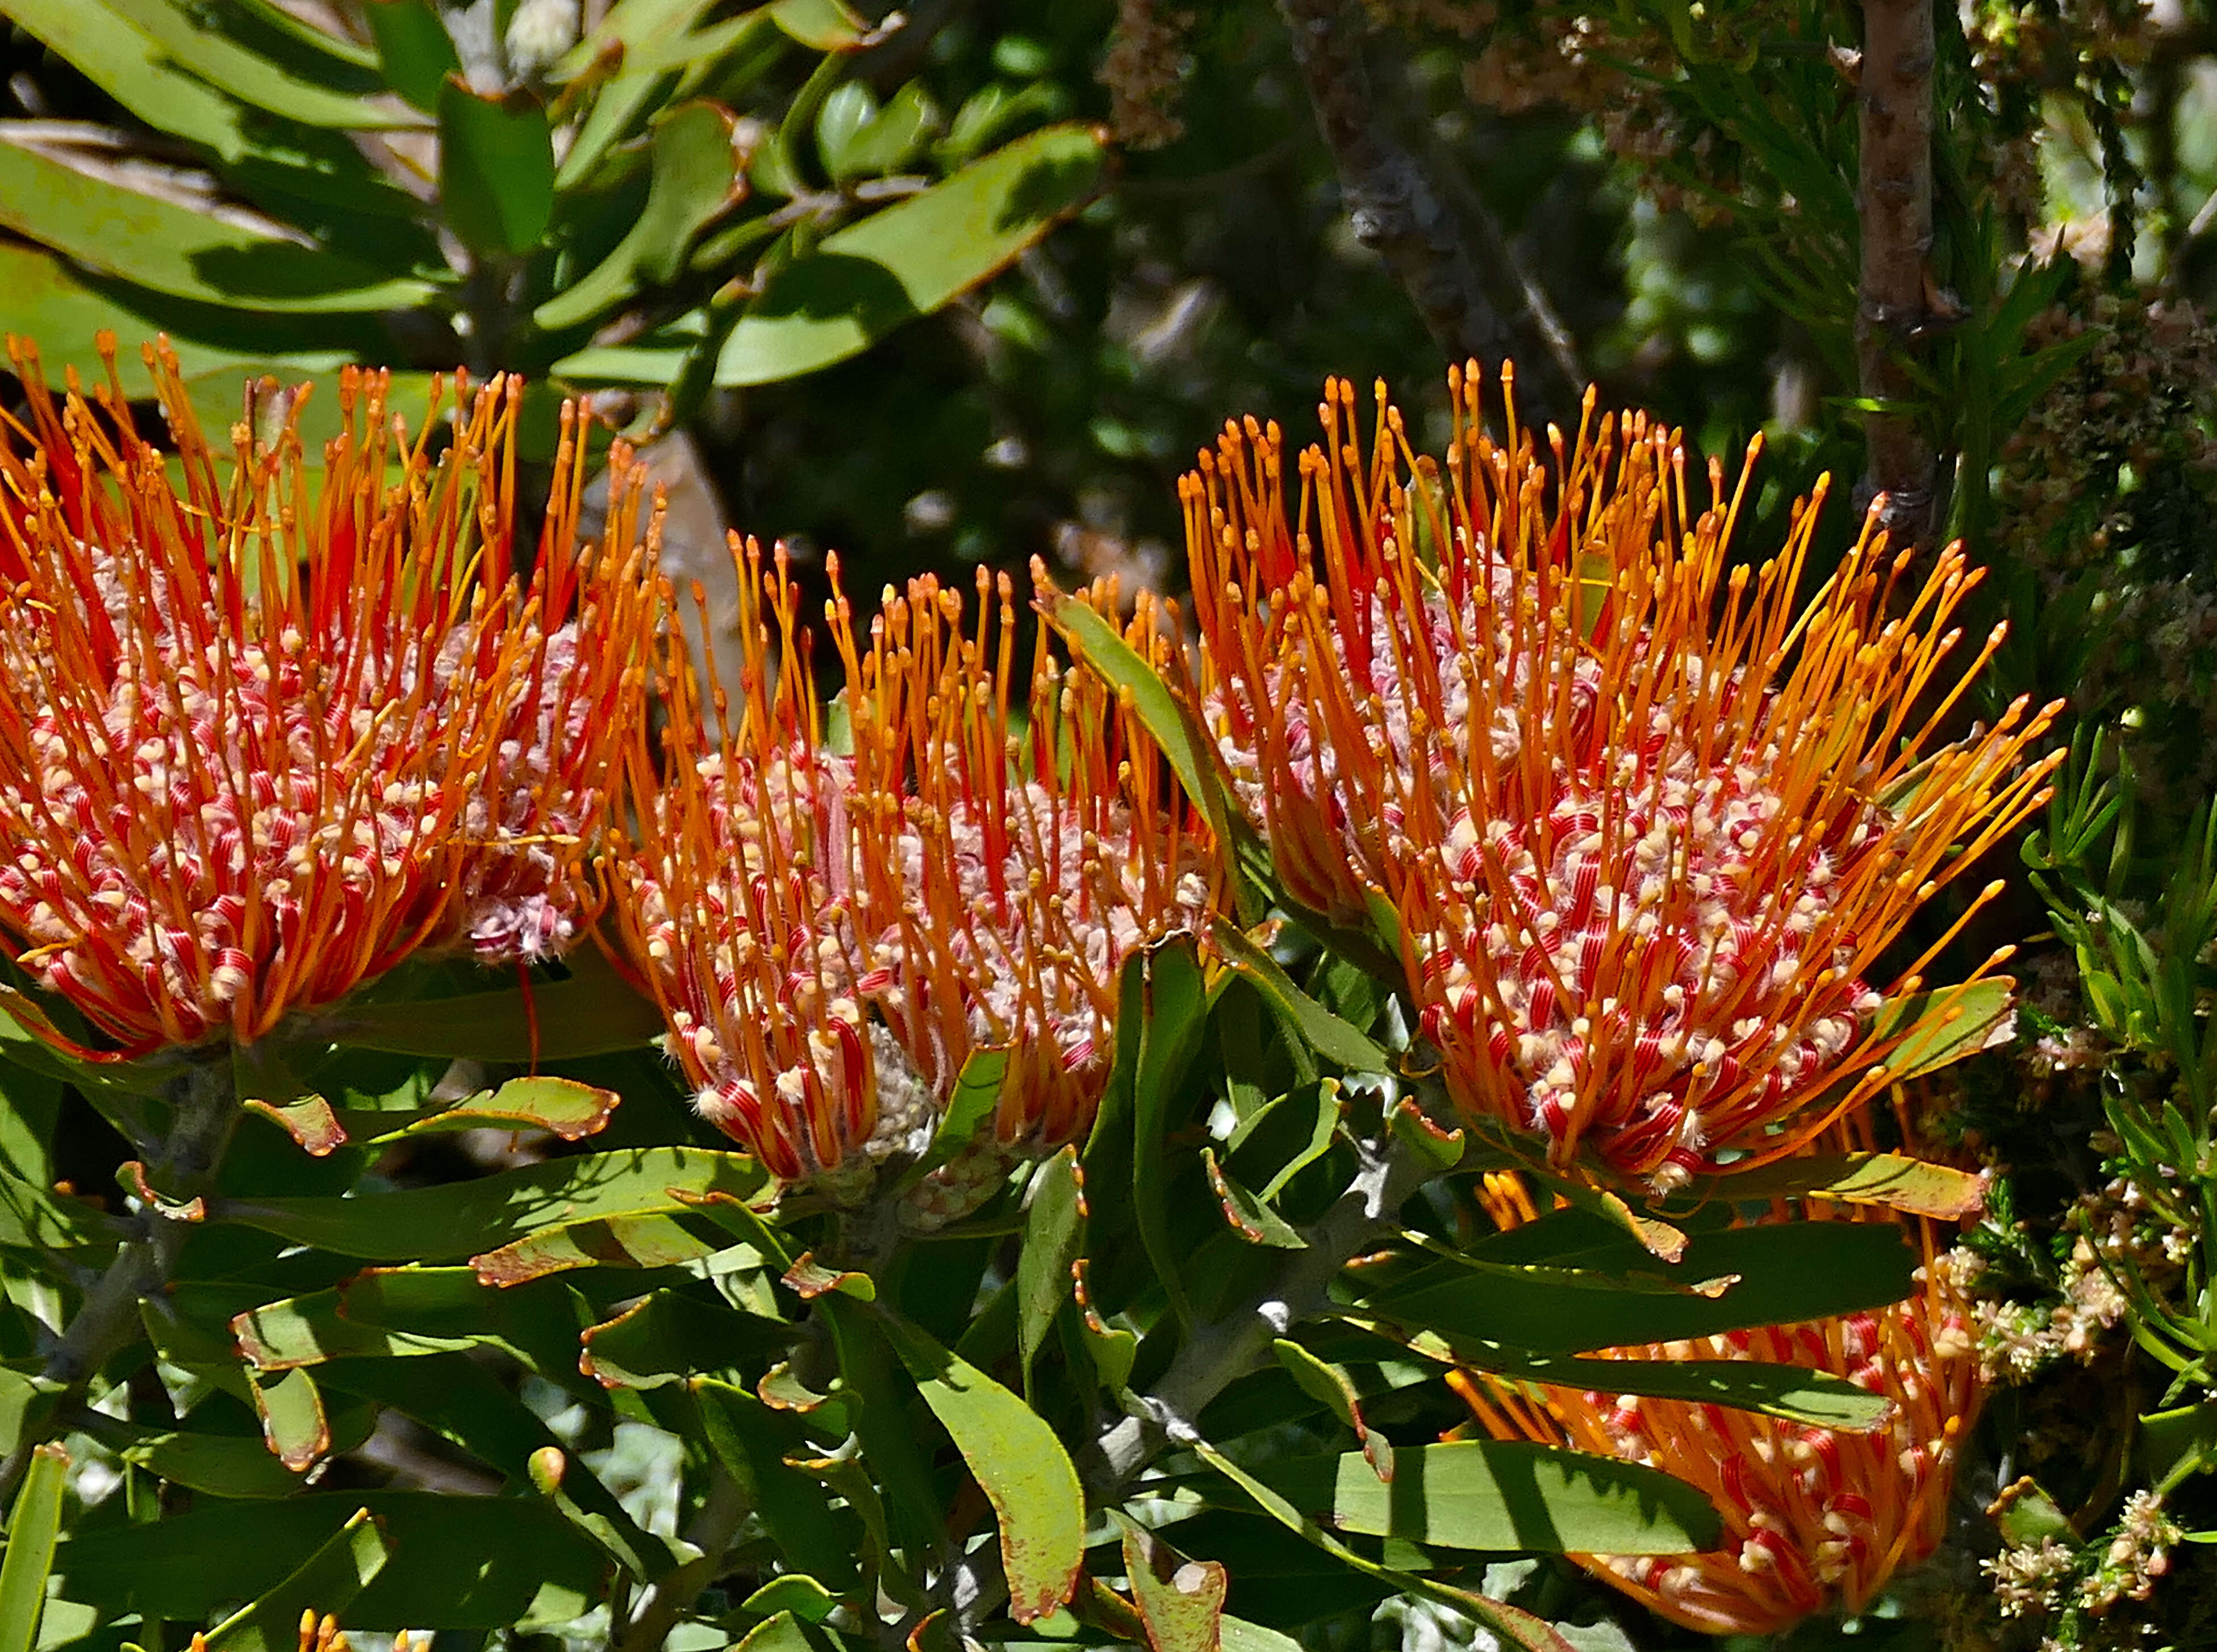 Image of leucospermum